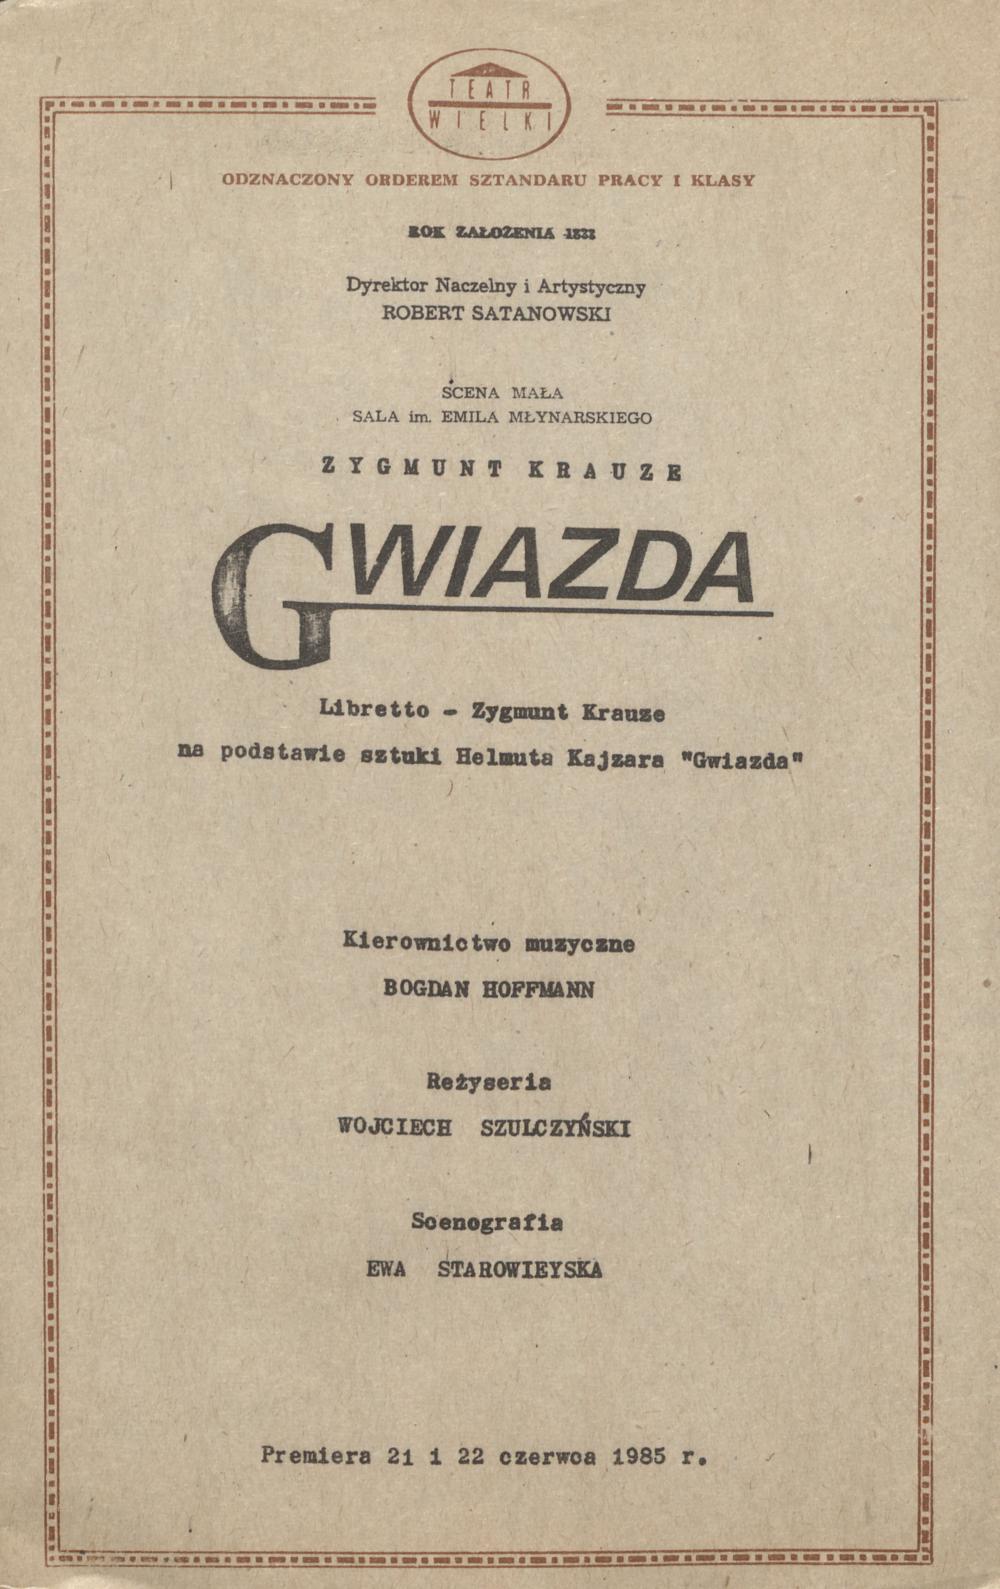 Wkładka Obsadowa "Gwiazda" Zygmunt Krauze 22.06.1985.